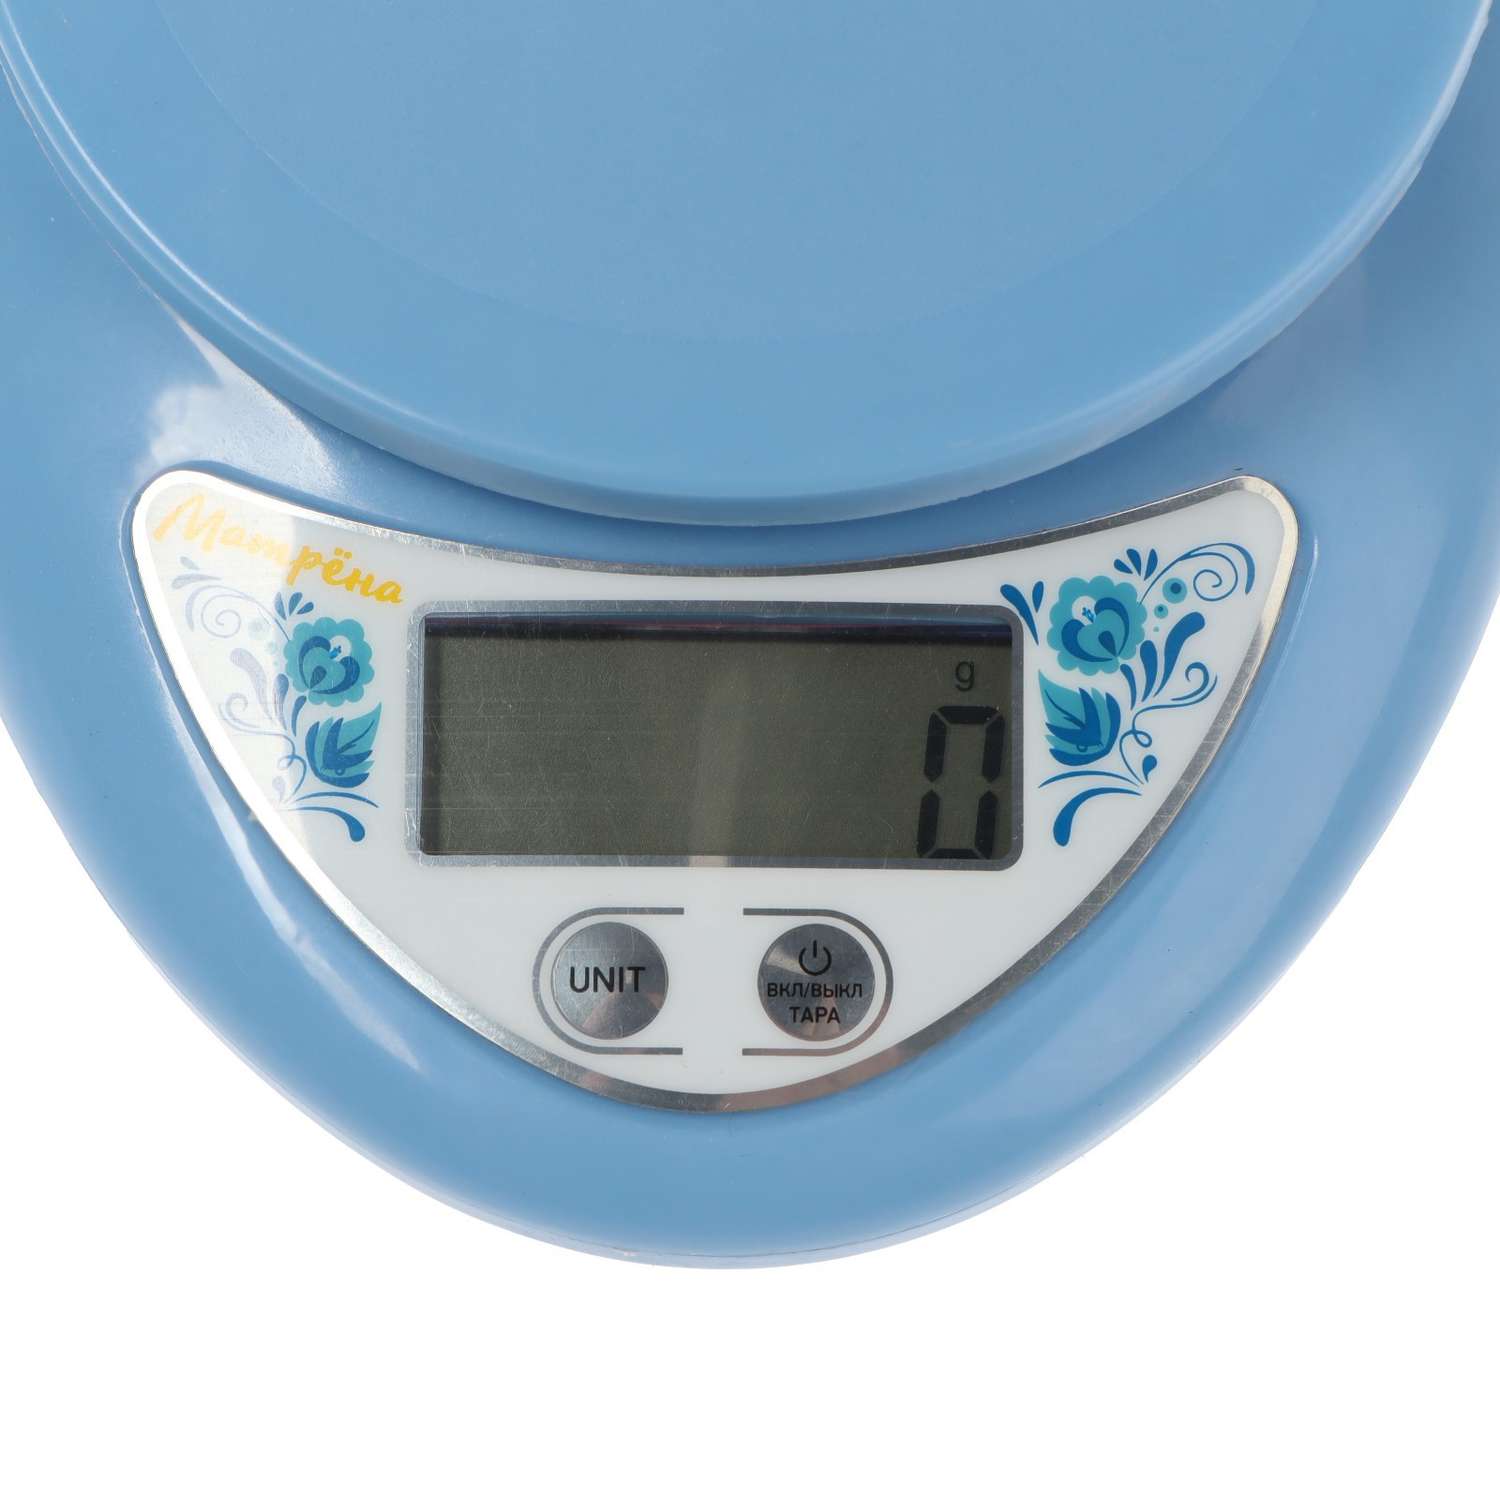 Весы кухонные Luazon Home МА-186 электронные до 5 кг голубые - фото 3